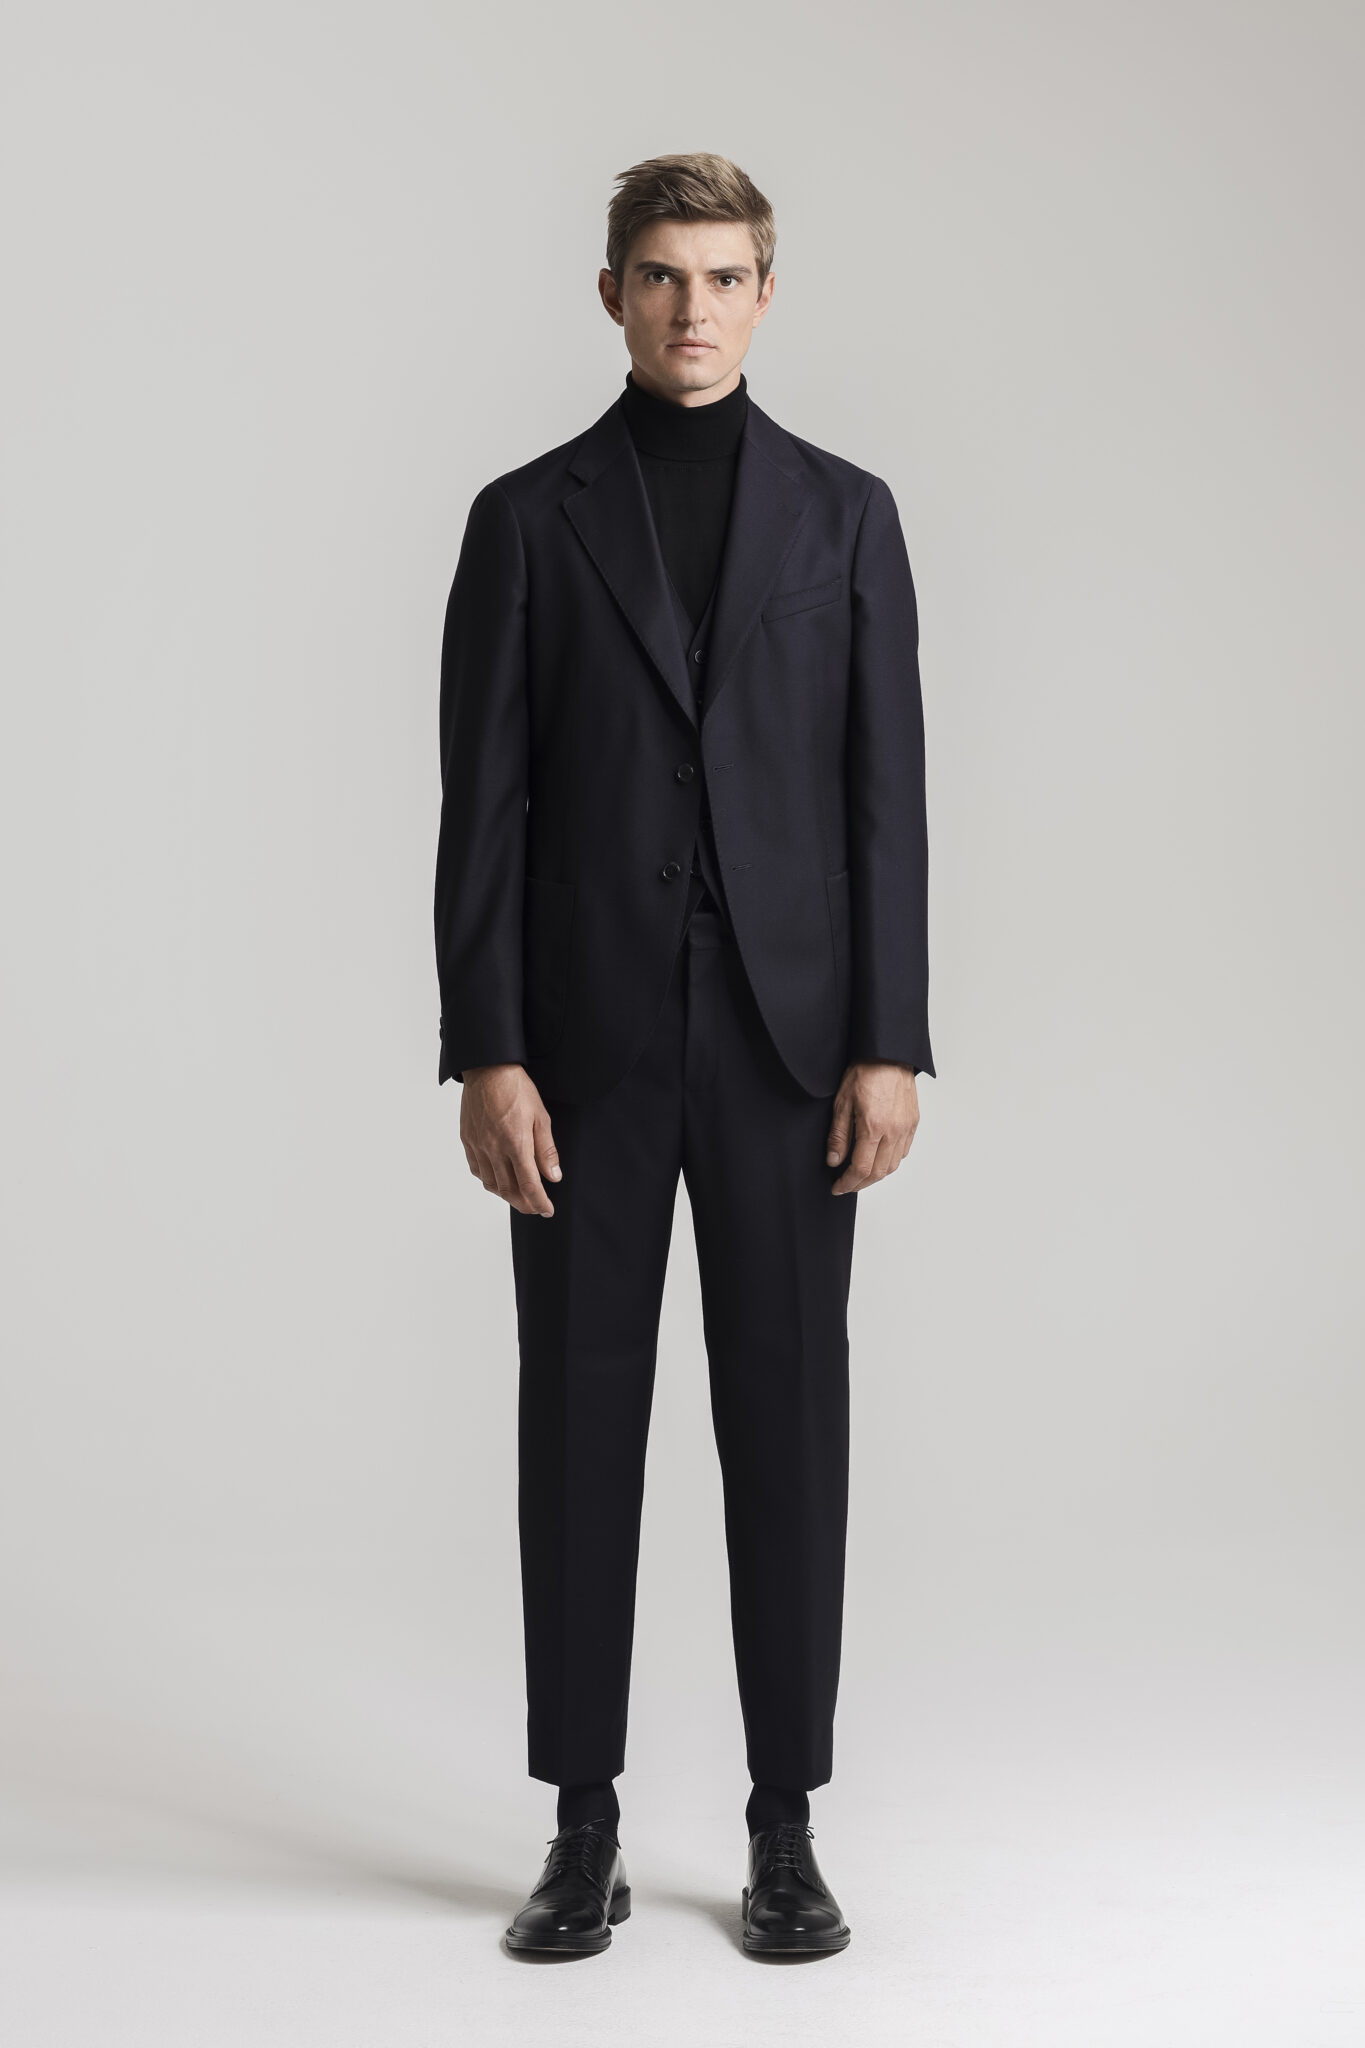 CC79B Intense Black Wool 2 Piece Suit - The Gordian Knot | Café Costume